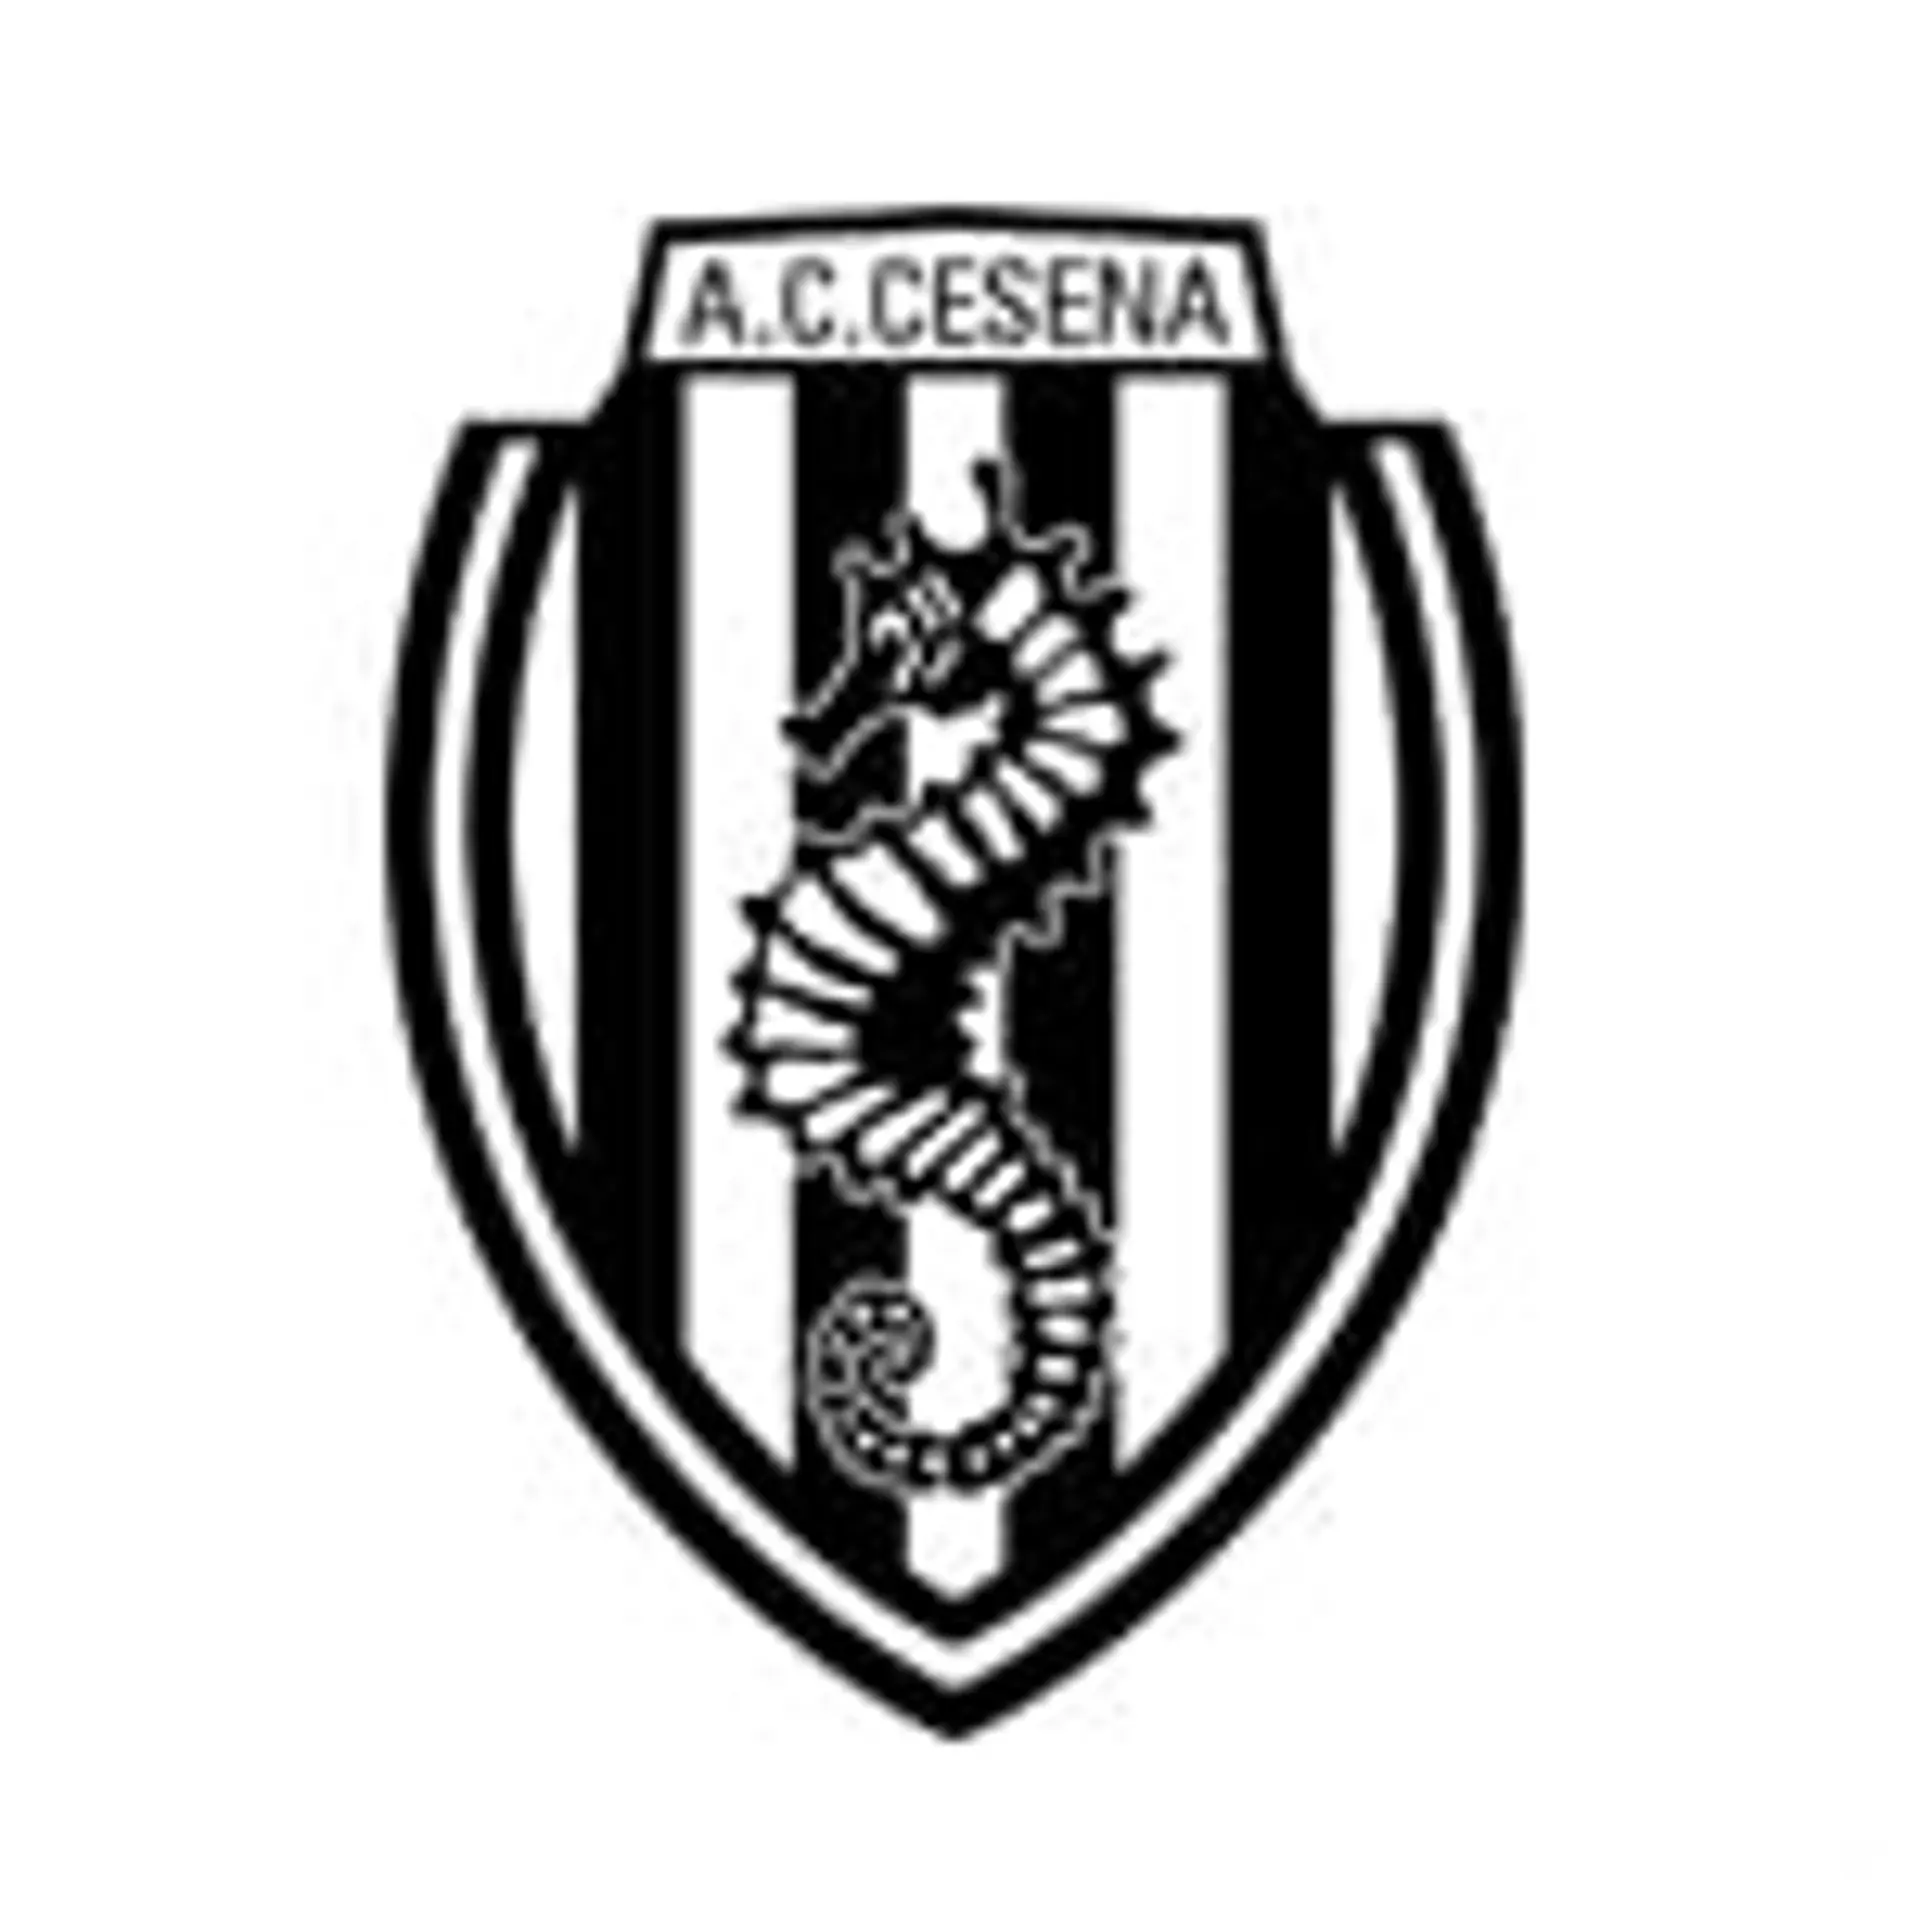 Cesena Fans 